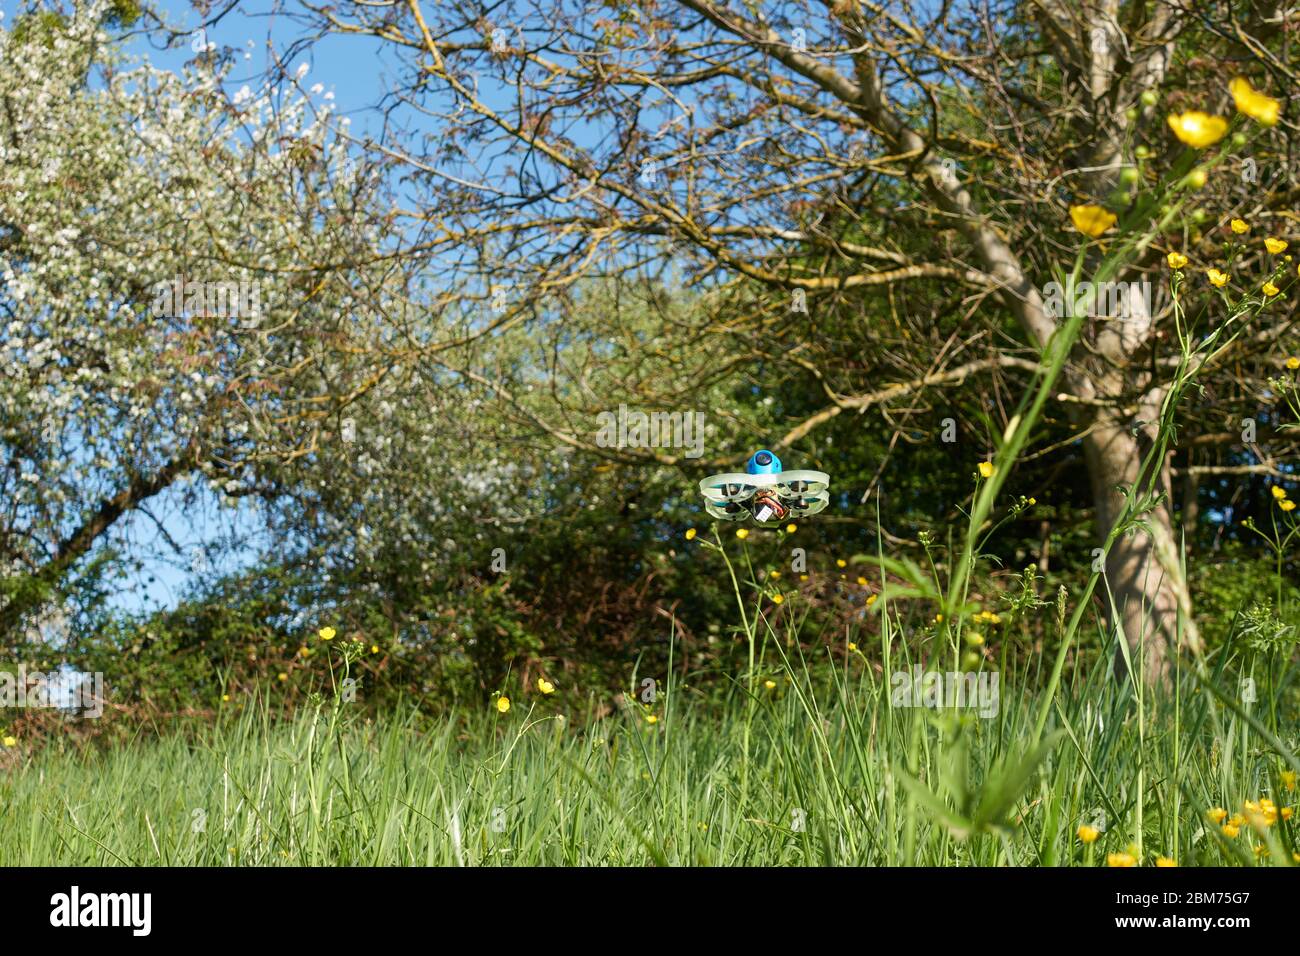 Petit drone bleu avec barre de protection blanche, passe en toute sécurité sur le champ de coupe de beurre, derrière lui un véritable arbre de noyer et de pommerNuertingen, Allemagne Banque D'Images